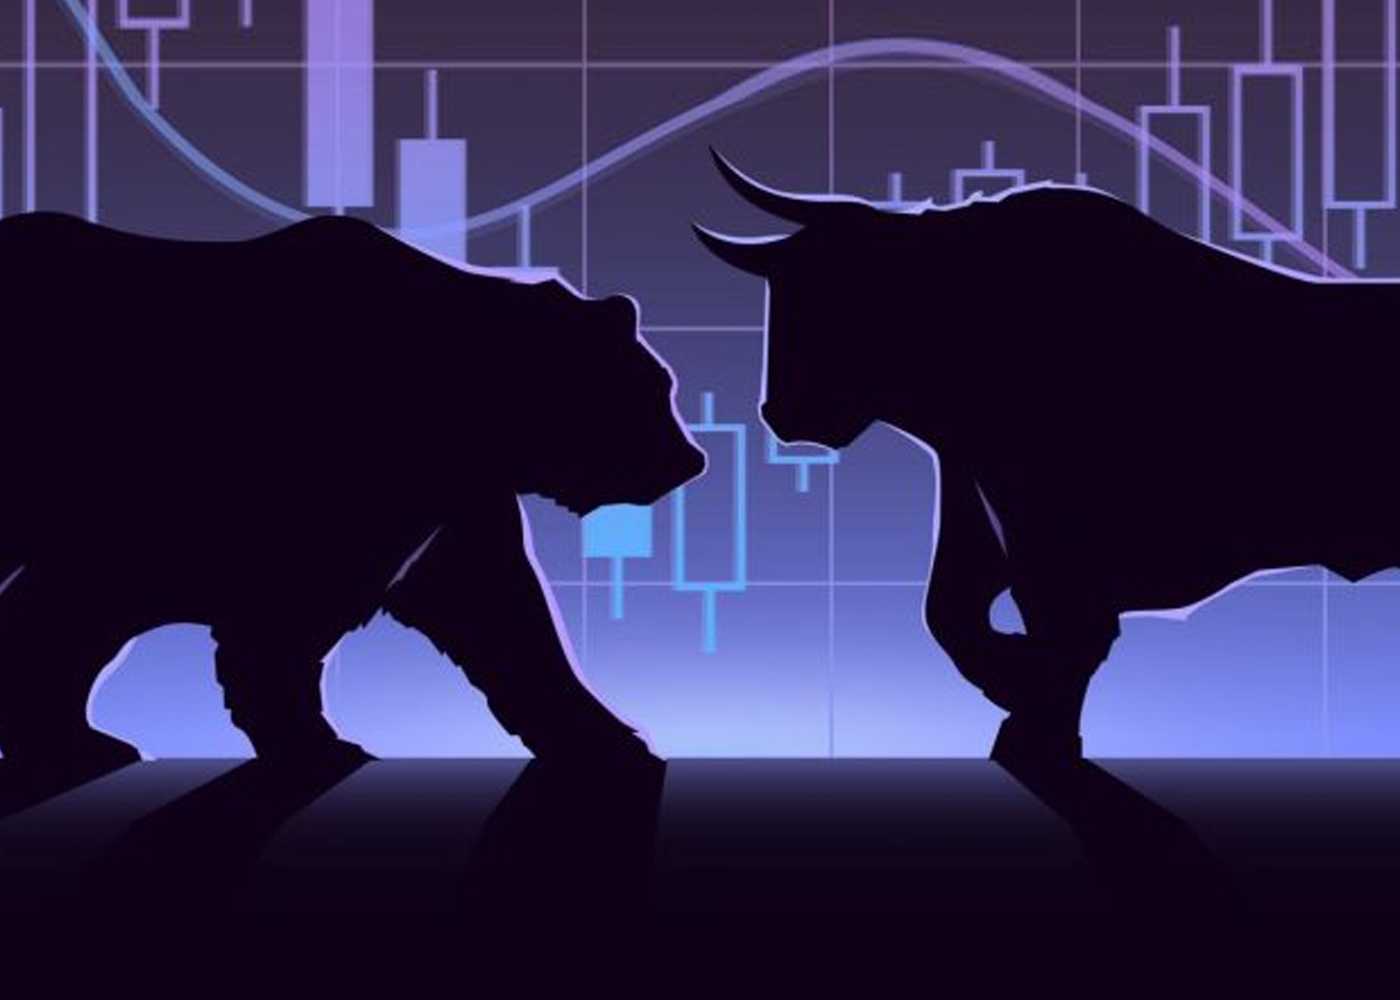 Медведи и быки на бирже: фондовый рынок включает и других животных, которые играют в трейдинг или работают профессионально